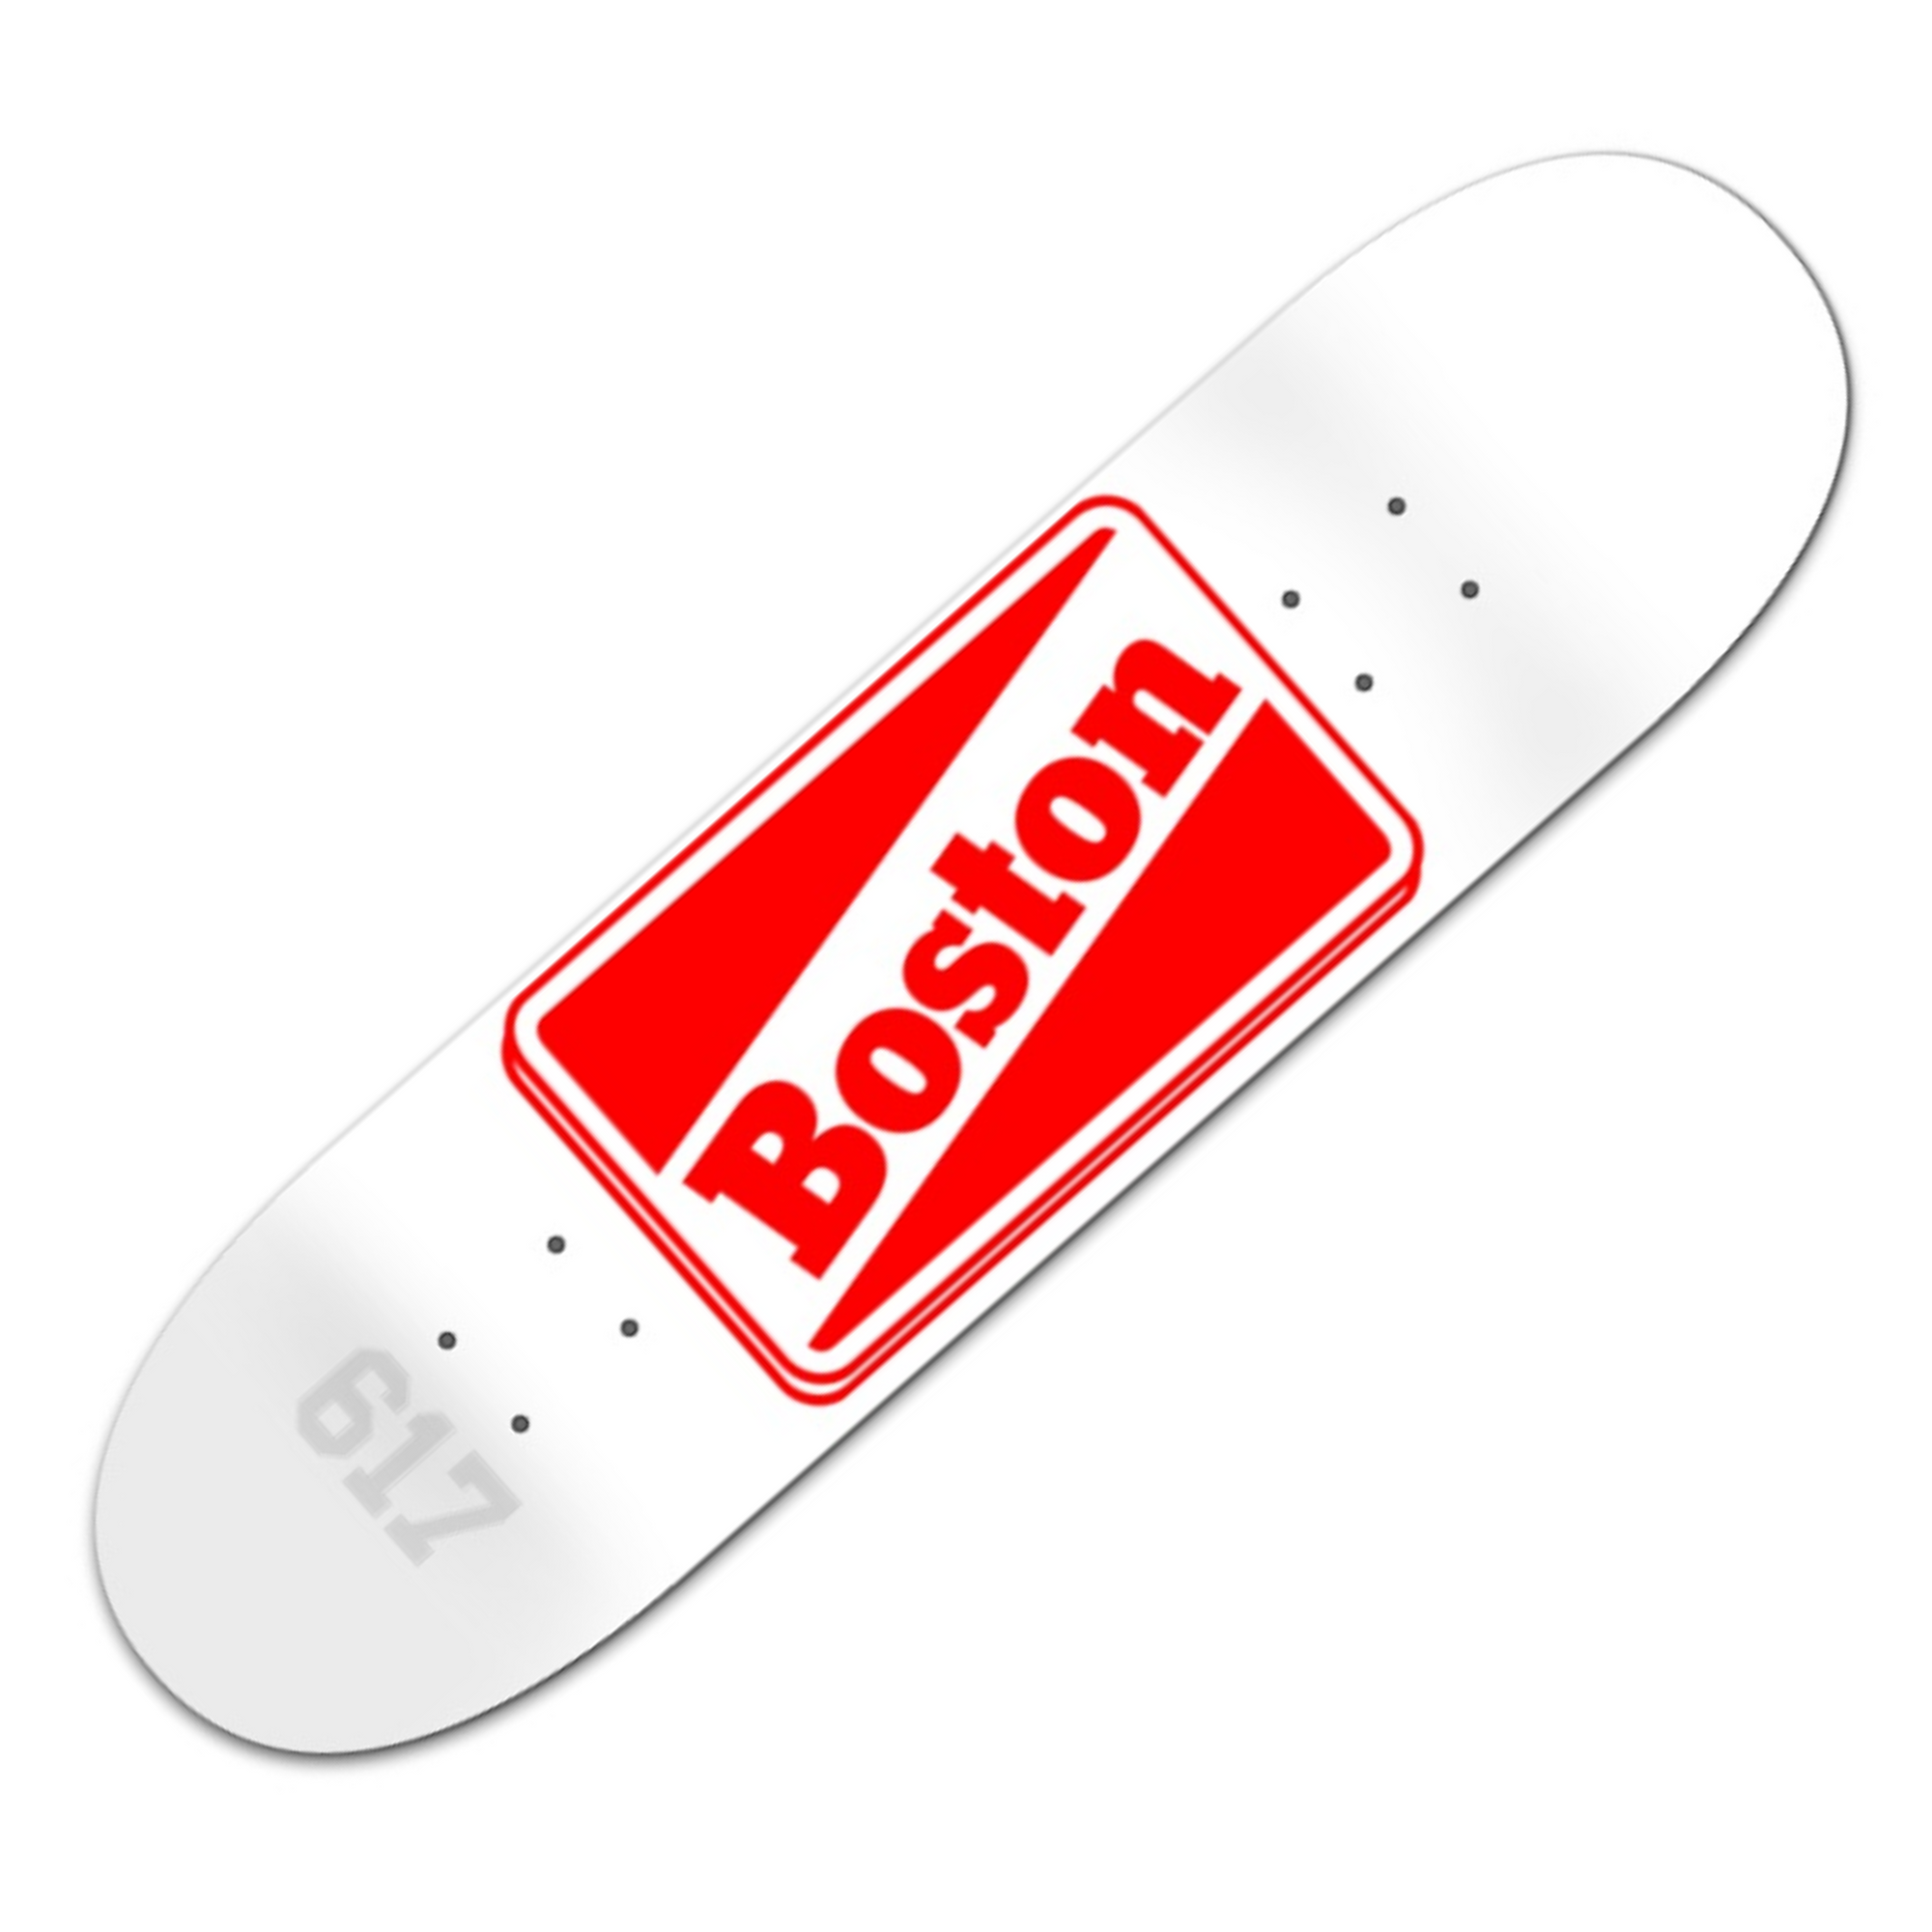 Mid-90s Skateboard - Boston Snapback Company